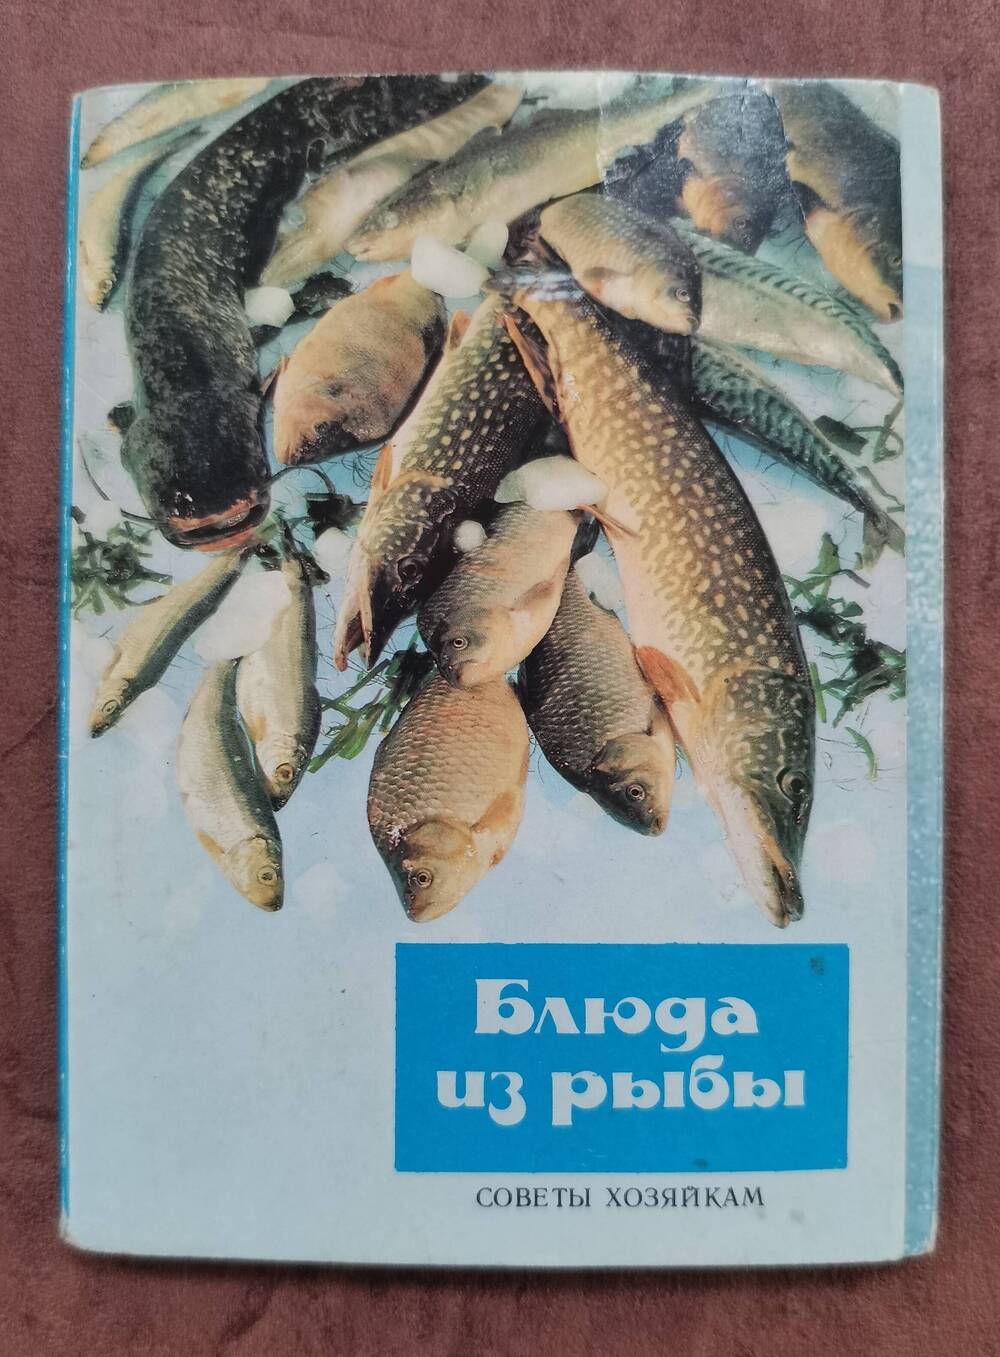 Открытка «Котлеты «Здоровье». Из комплекта открыток «Советы хозяйкам. Блюда из рыбы».